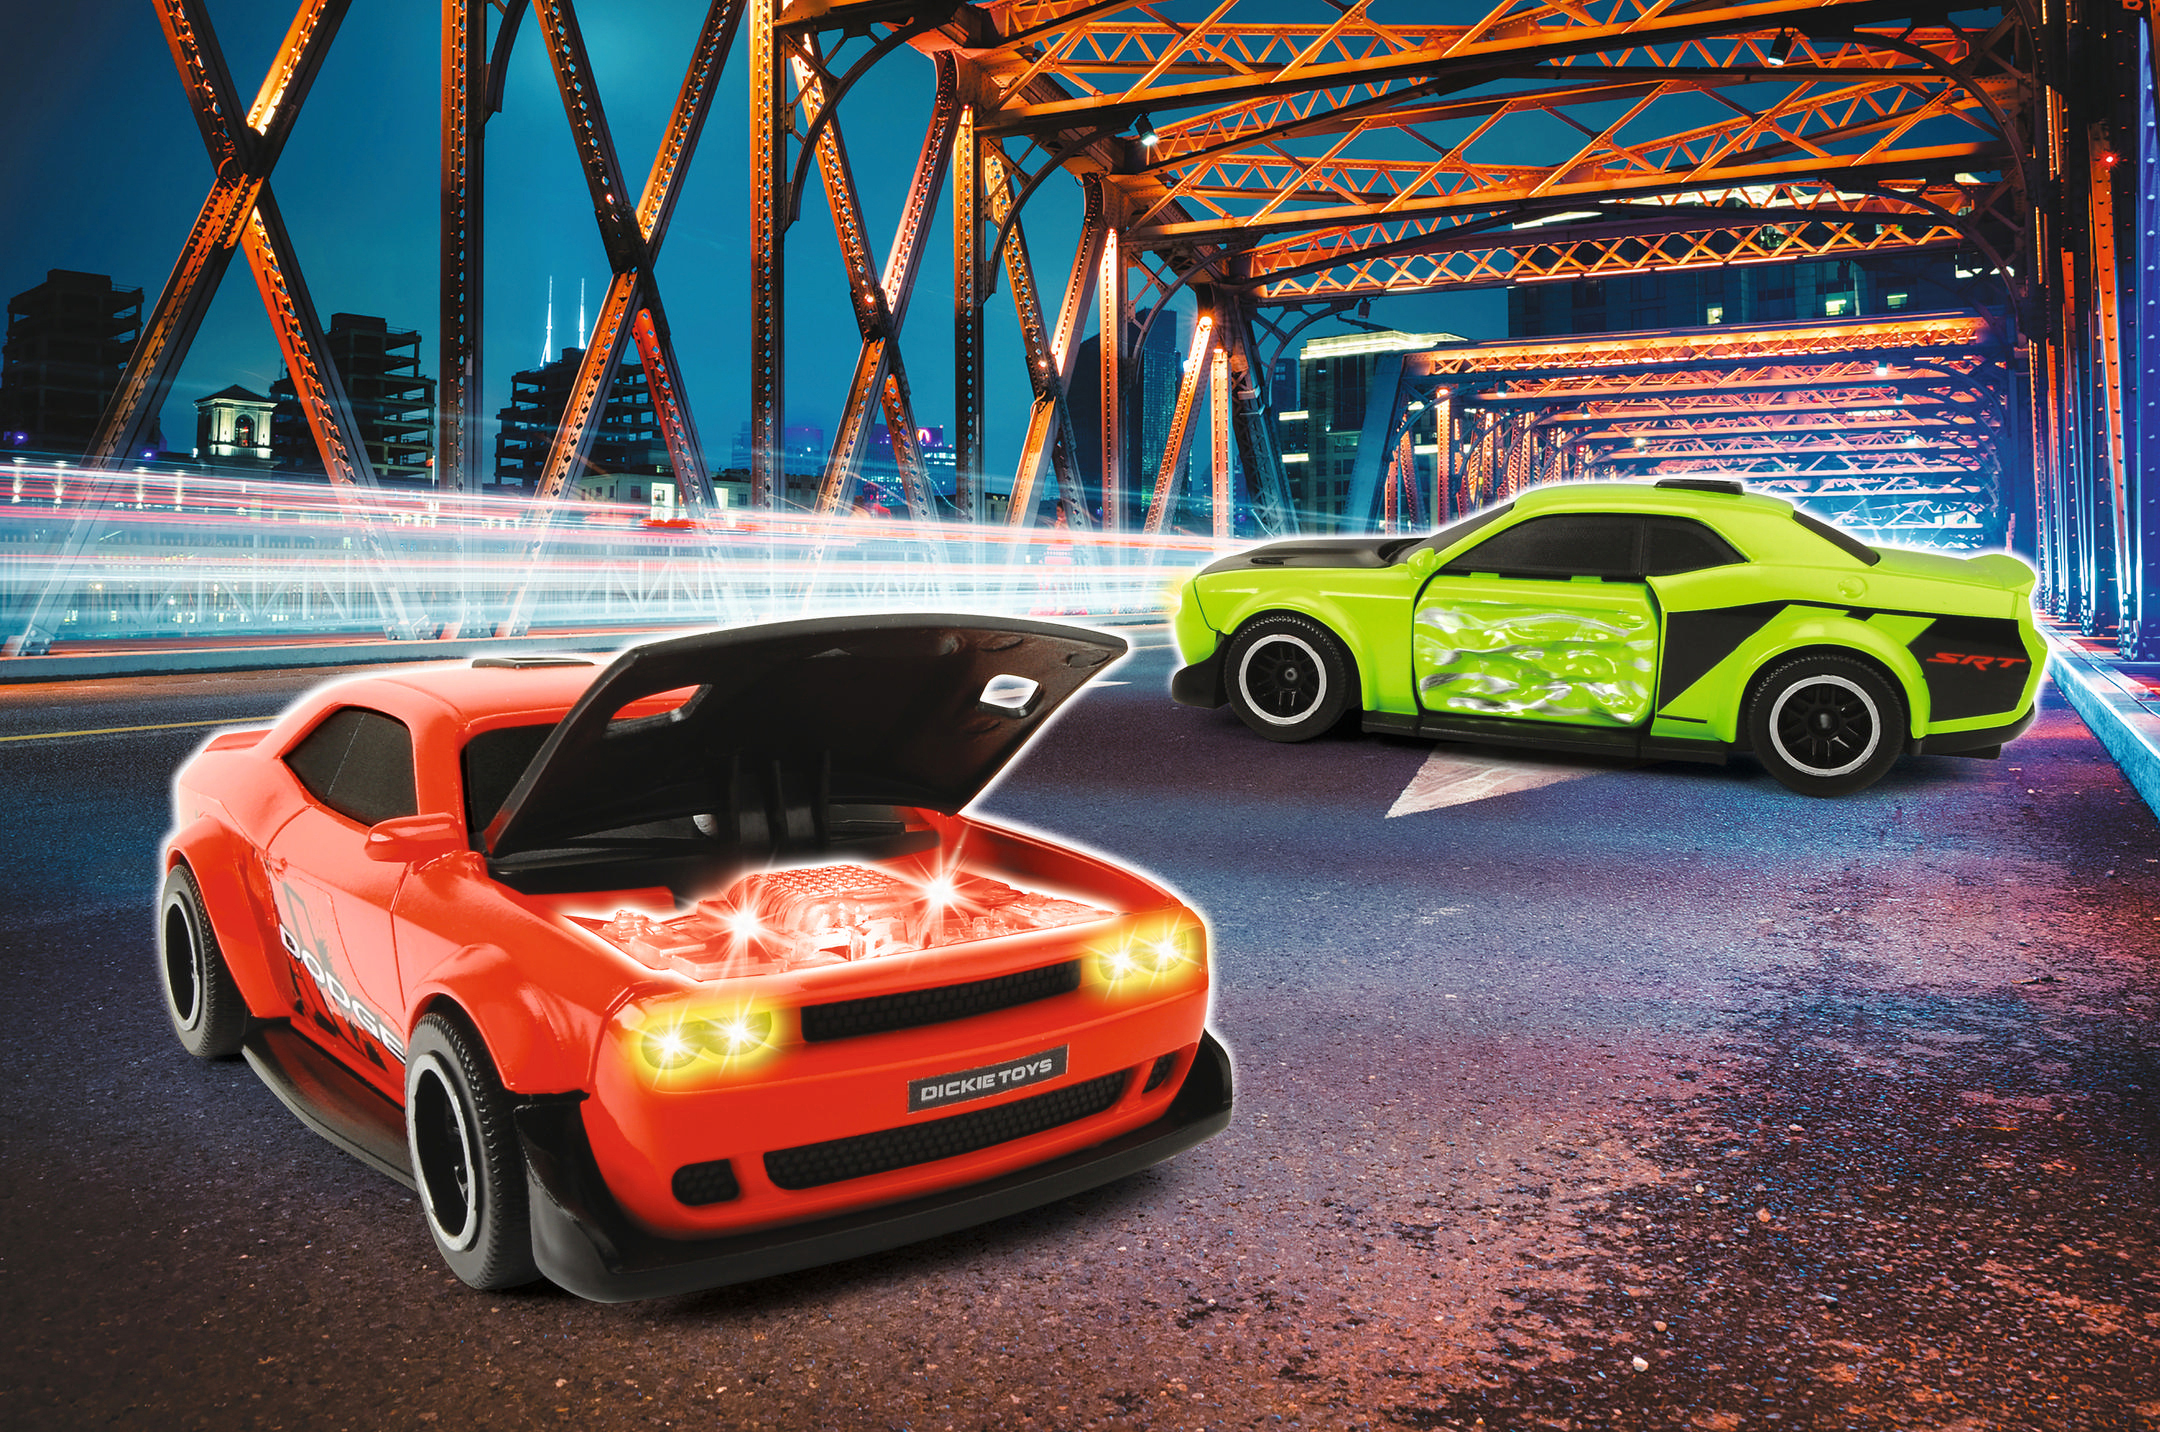 DICKIE-TOYS Dodge Challenger SRT Hellcat, Spielzeugauto Freilauf, Rot/Grün mit Spielzeugauto sortiert 2-fach